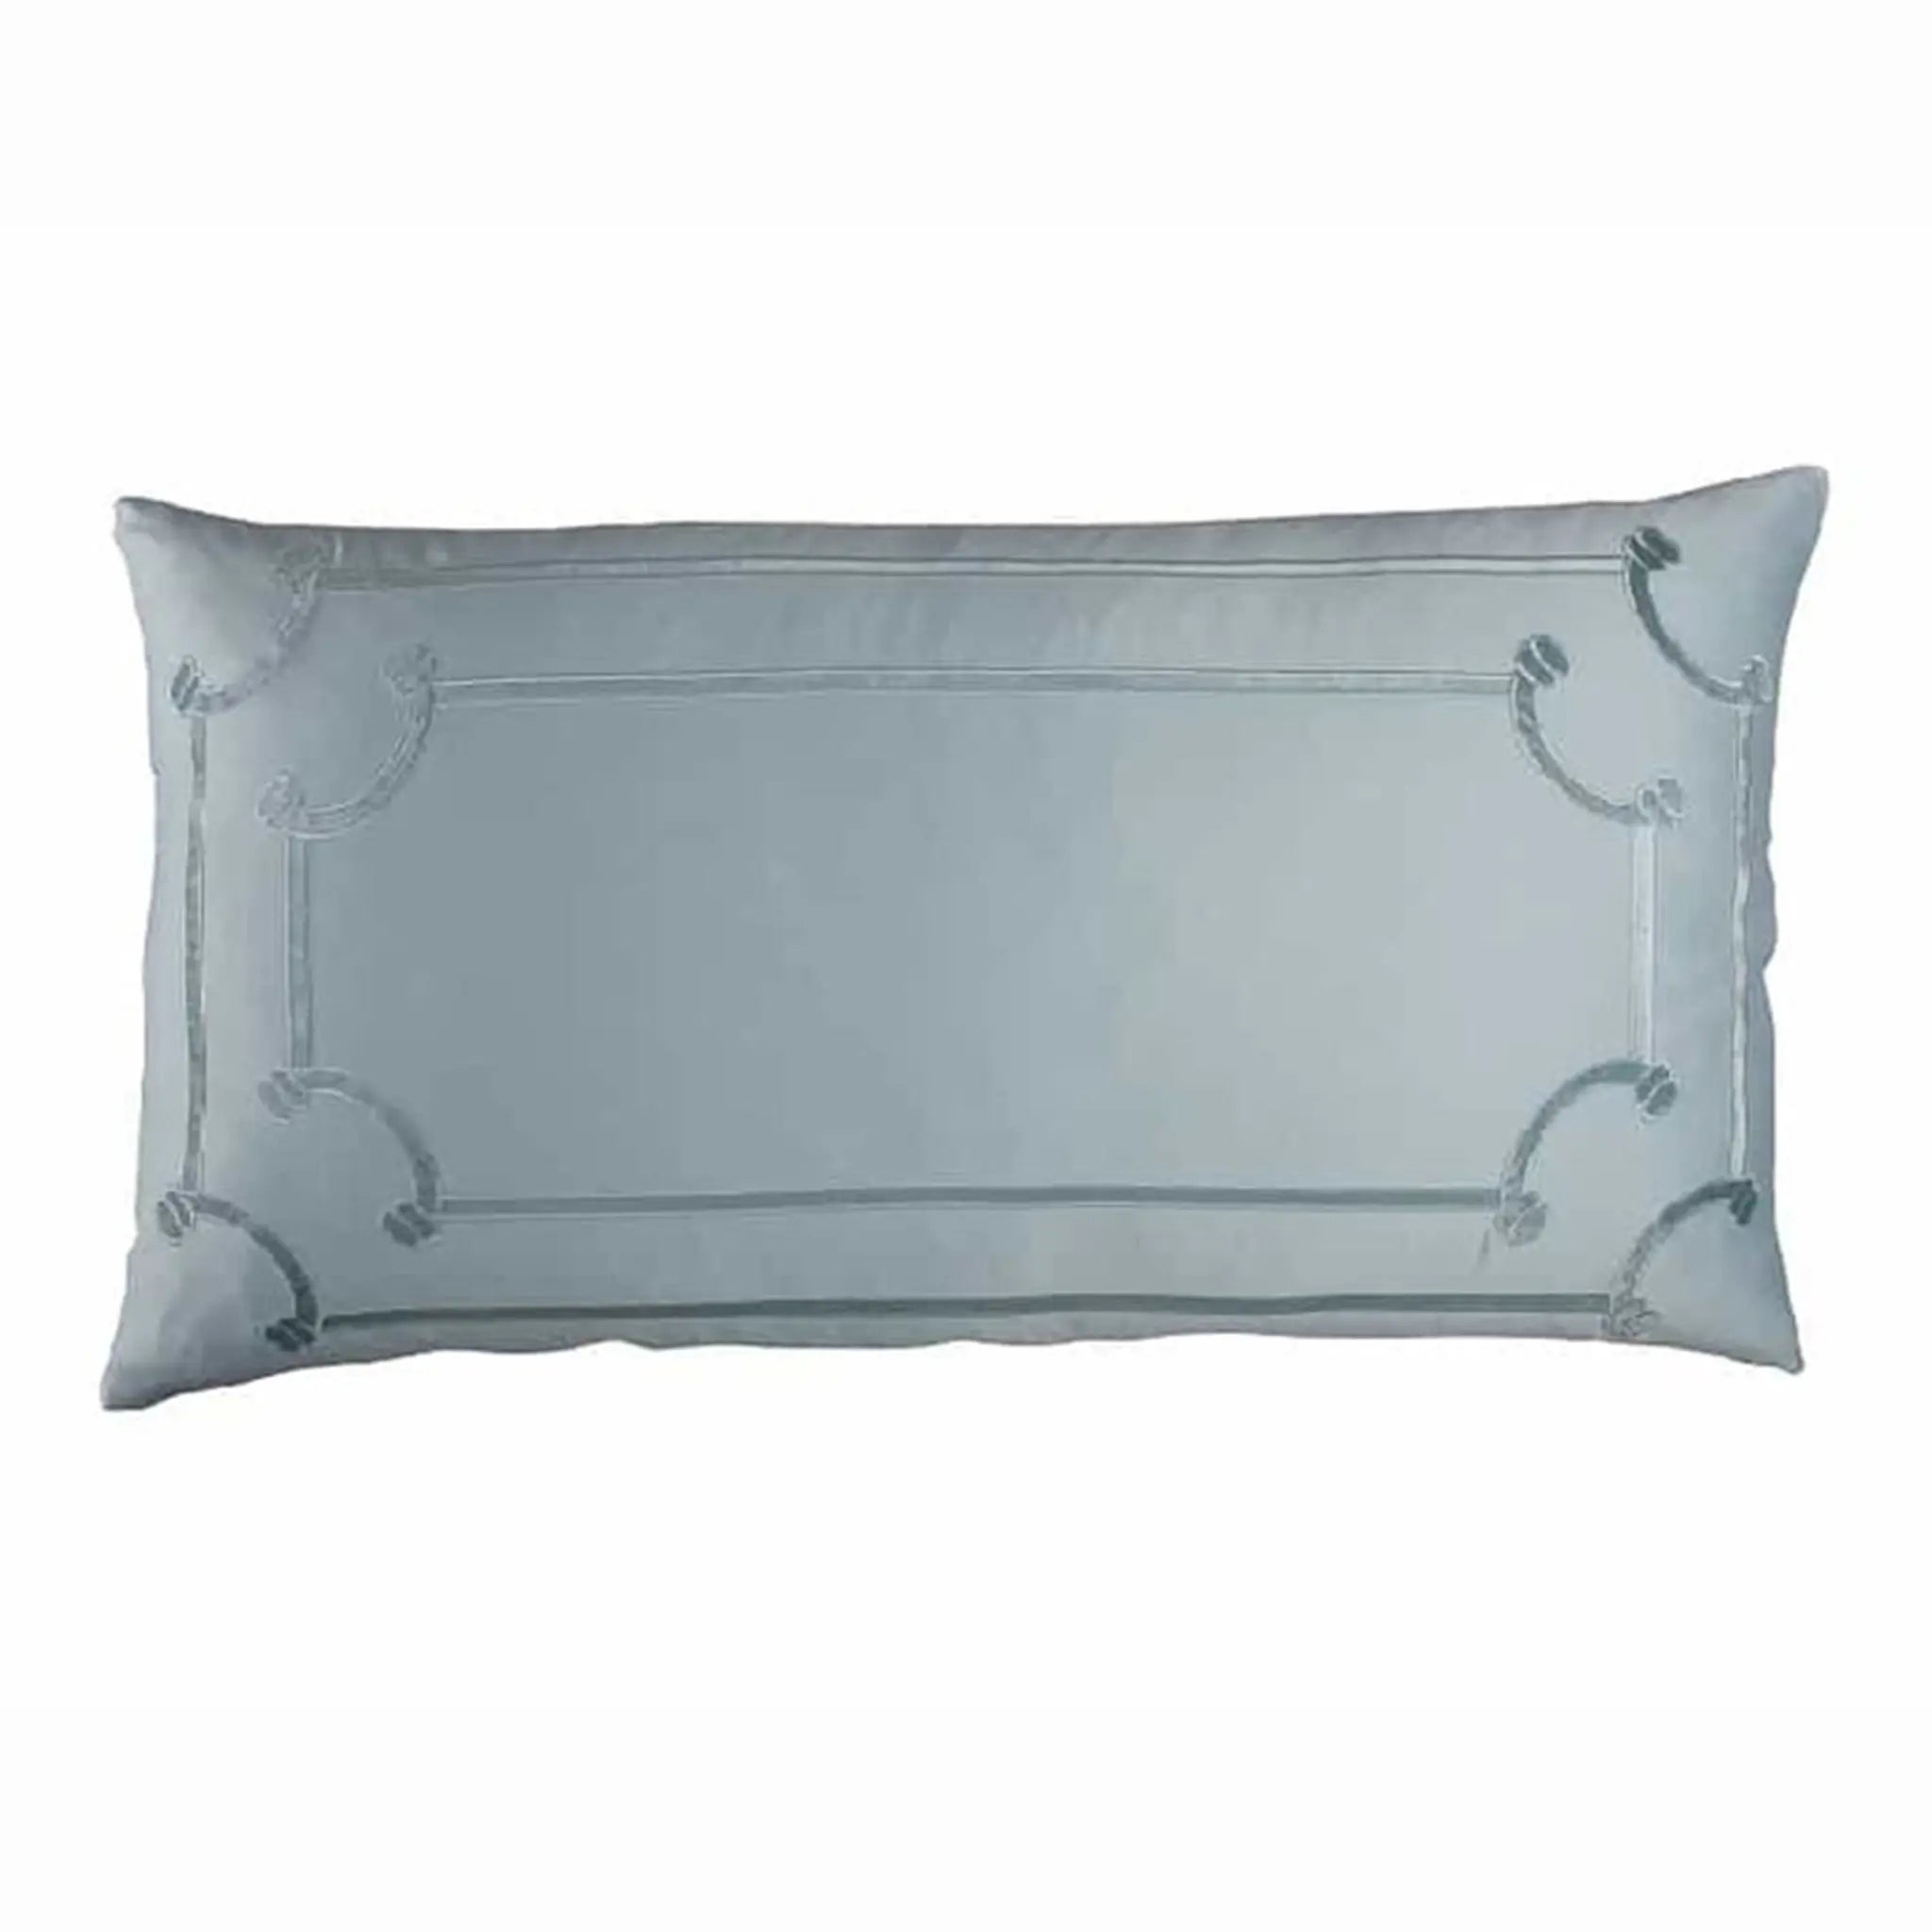 Lili Alessandra Vendome King Pillow in Sea Foam